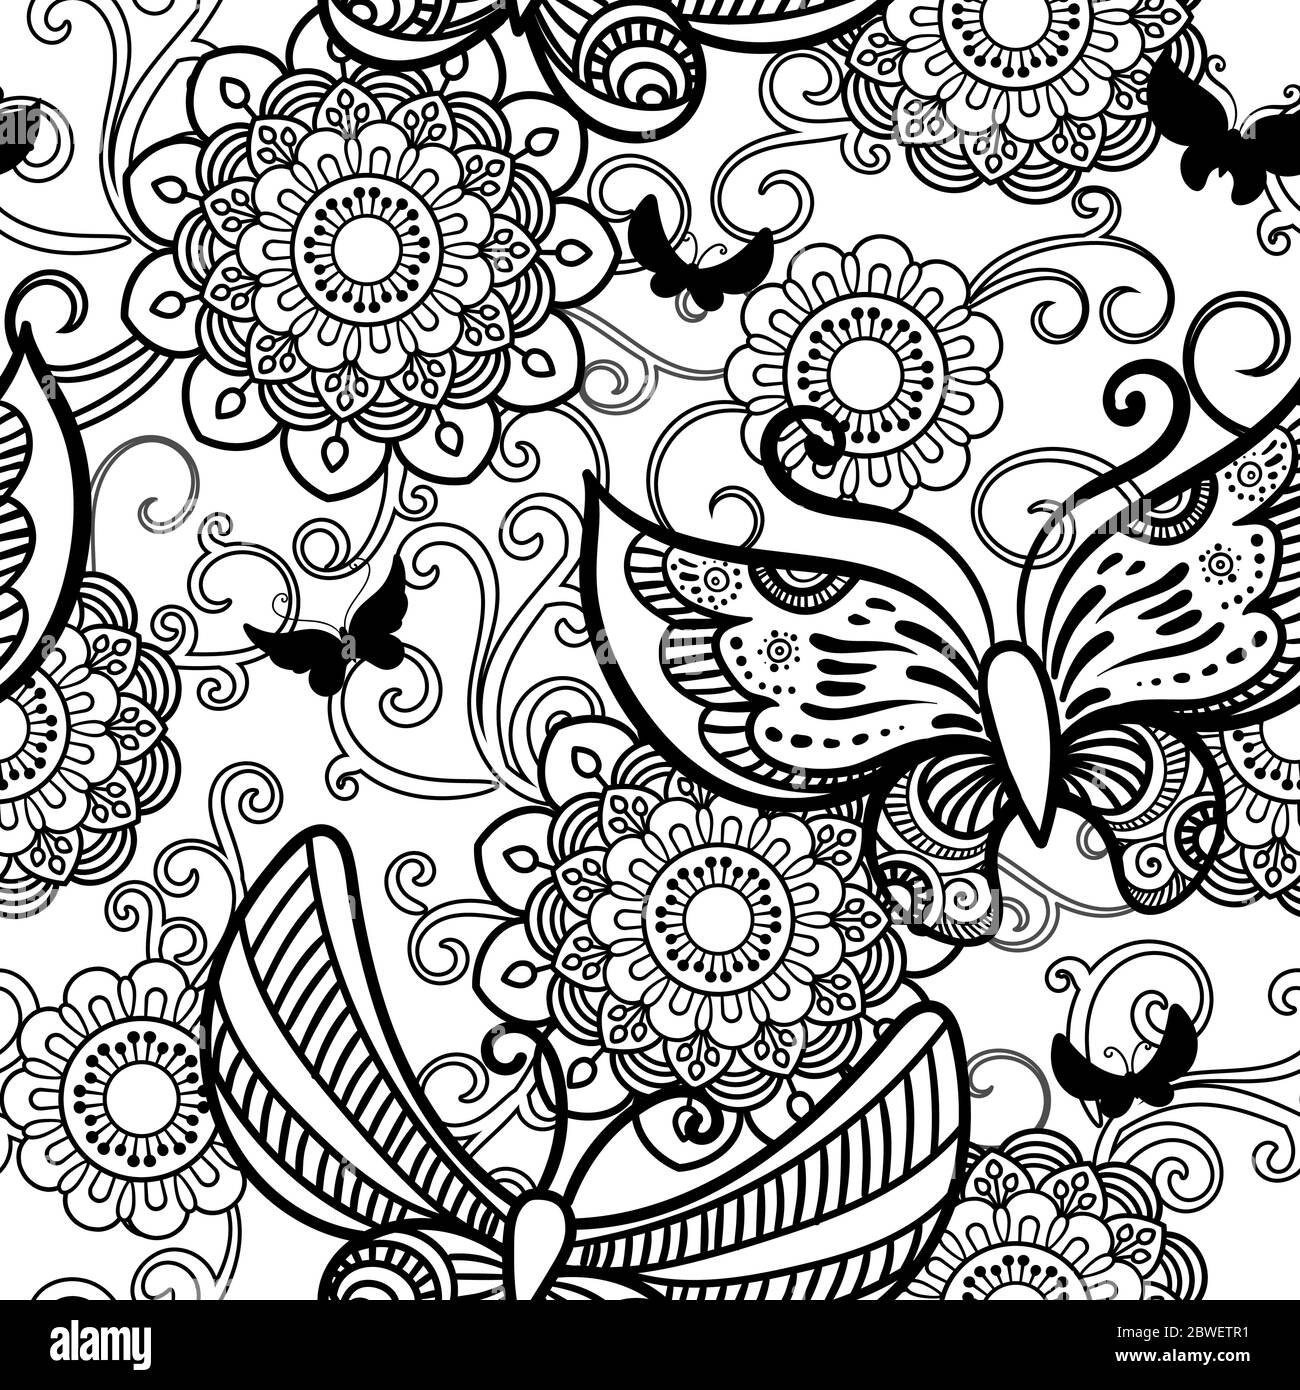 Disegnata a mano fiori e farfalle pattern senza giunture. Bianco e nero illustrazione vettoriale in stile scarabocchi. Isolato su sfondo bianco. Libro da colorare pagina. Illustrazione Vettoriale